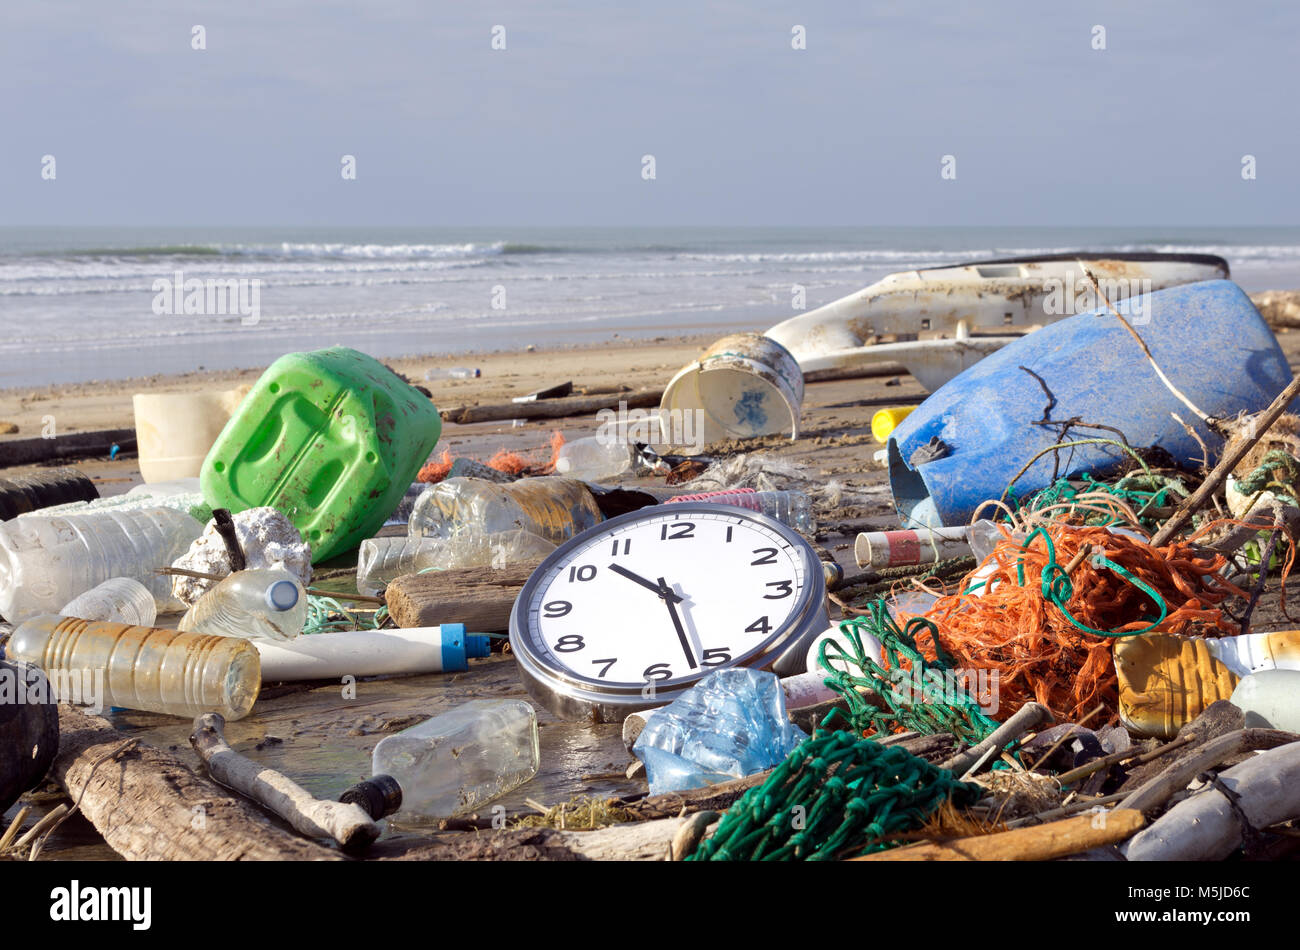 Pollution maritime : il est temps de se réveiller. Les ordures et déchets échoués sur une plage. Concept Banque D'Images